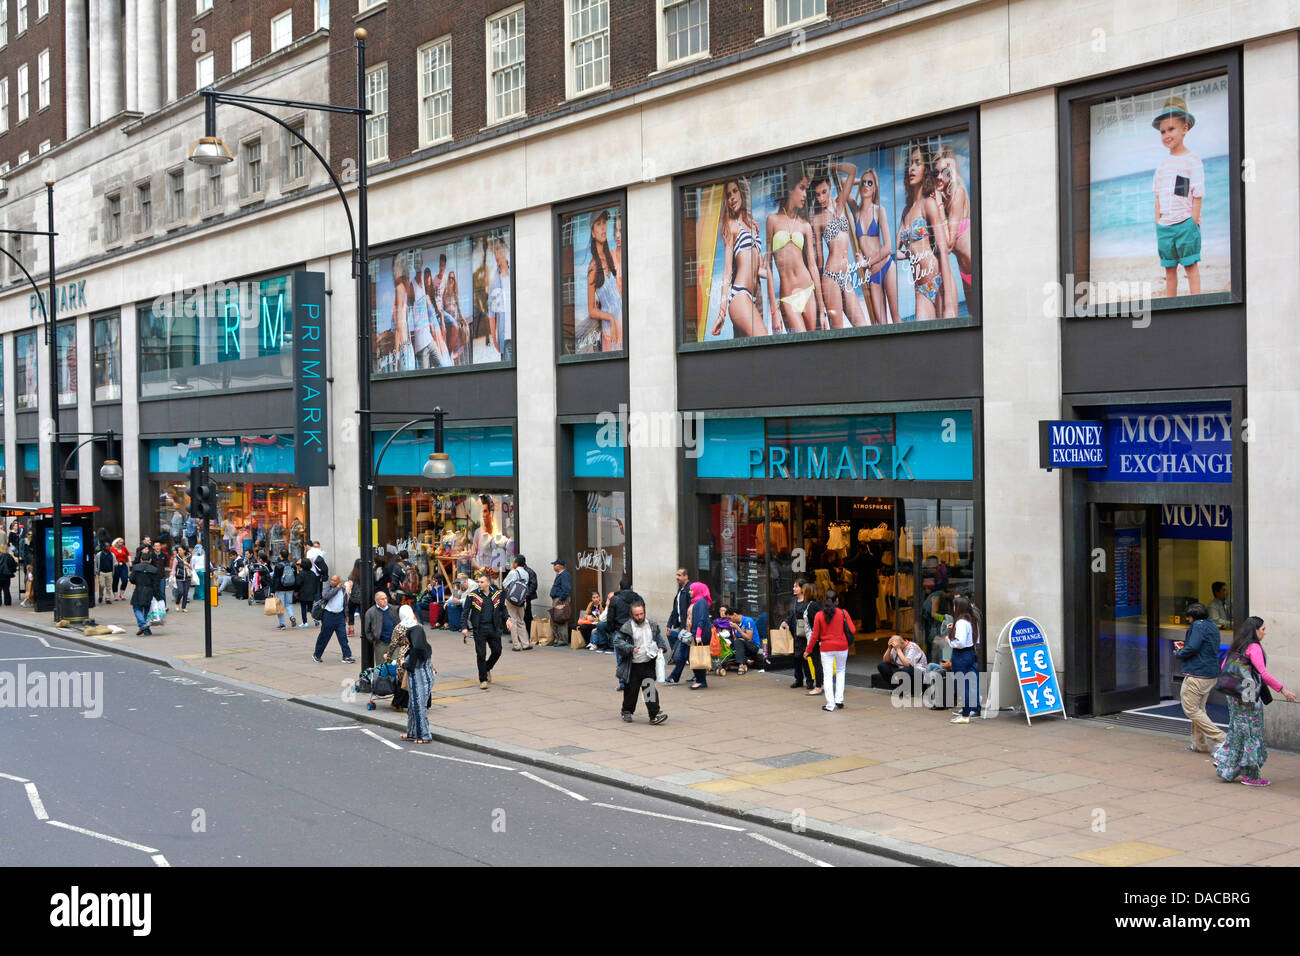 Un trottoir animé avec des acheteurs à l'extérieur de Primark vêtements de mode rapide magasin de détail avant et magasins fenêtres Oxford Street West End Londres Angleterre Royaume-Uni Banque D'Images